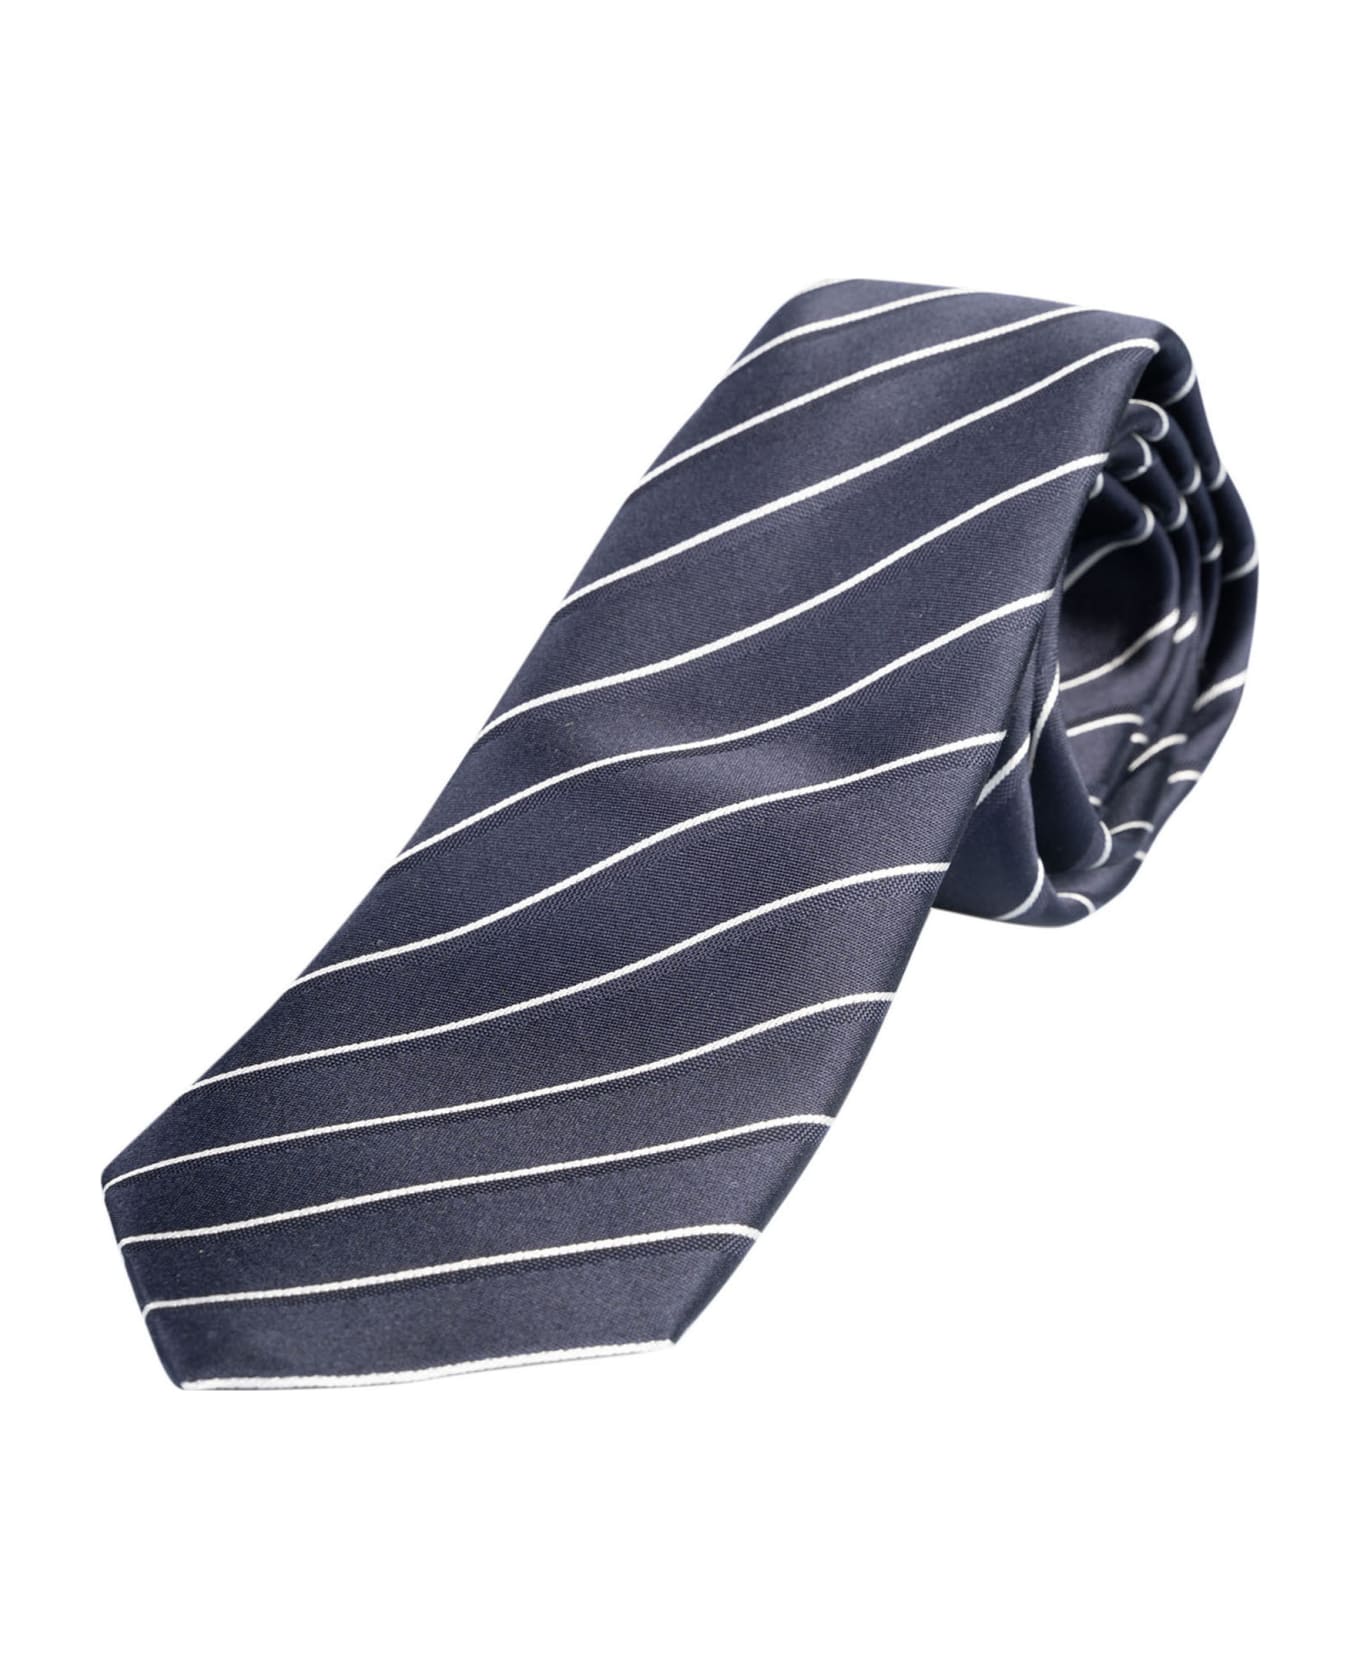 Giorgio Armani Striped Neck Tie - Multi ネクタイ